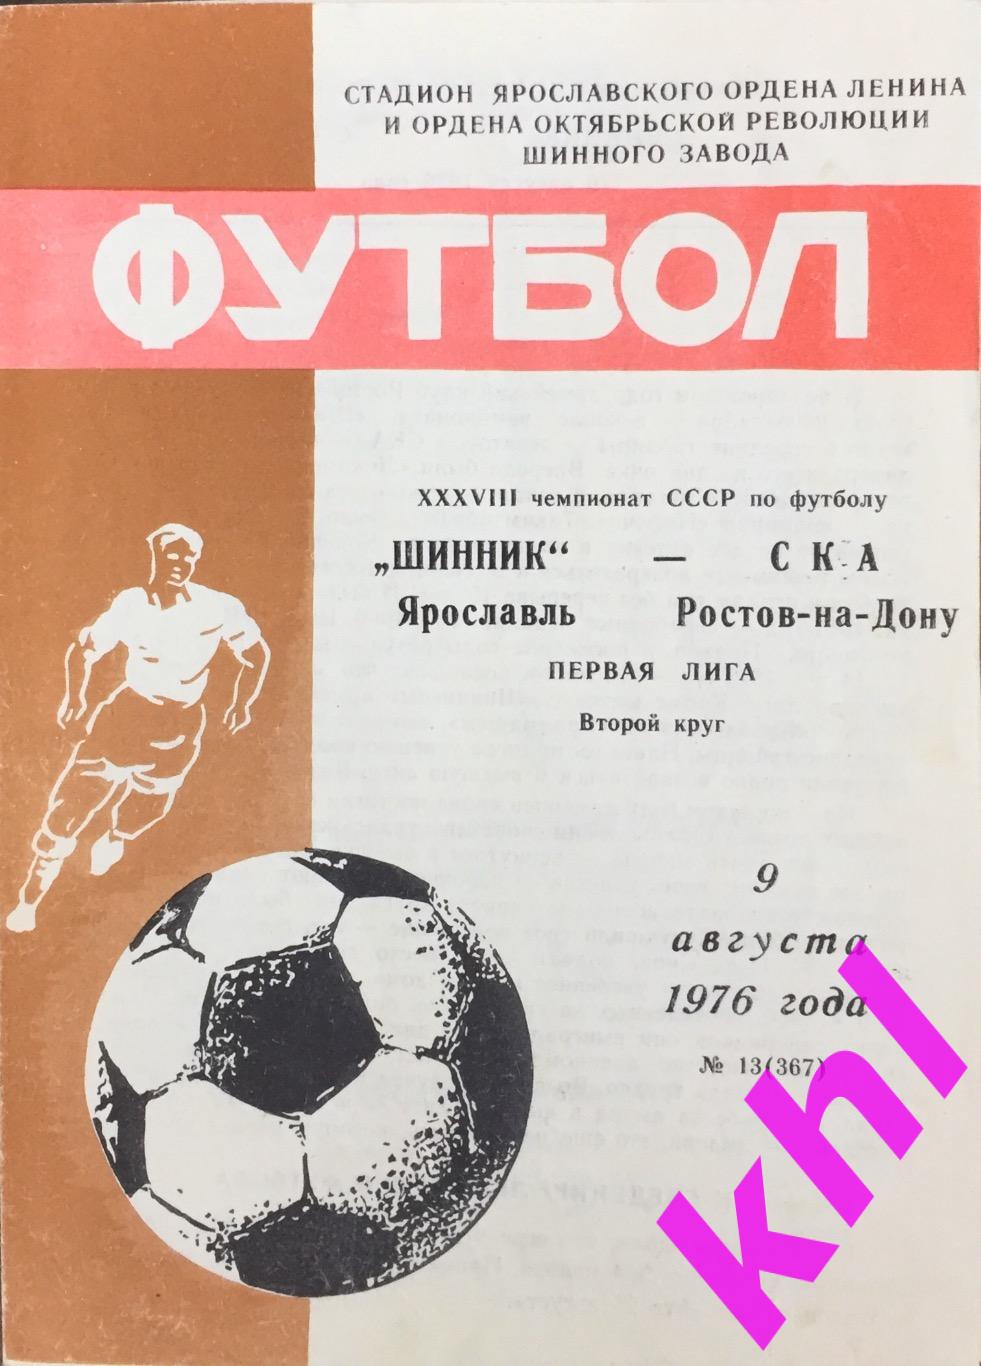 Шинник Ярославль - СКА Ростов-на-Дону 9 августа 1976